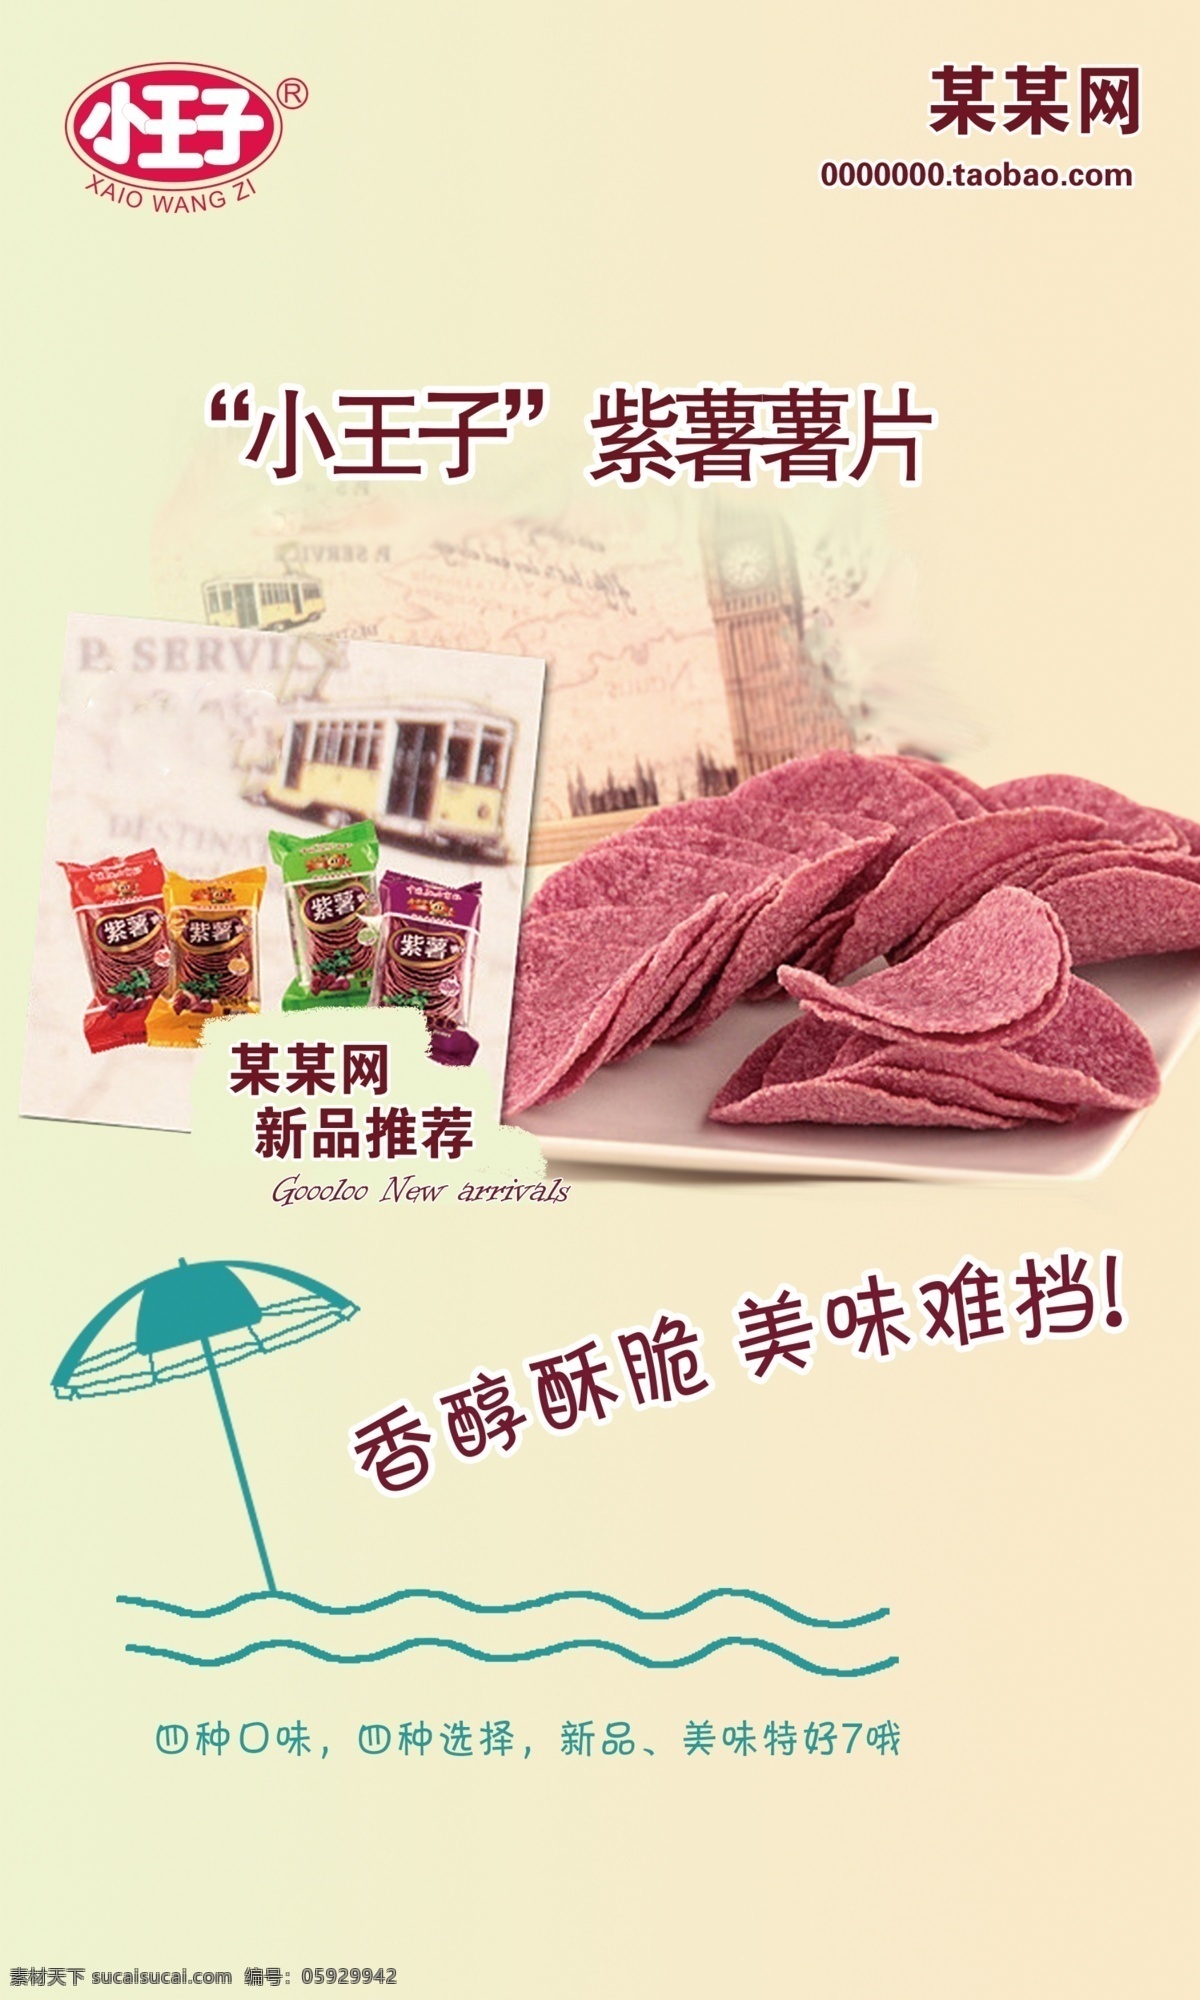 食品零食海报 薯片 紫薯 小王子 雨伞 零食 食品 广告设计模板 源文件